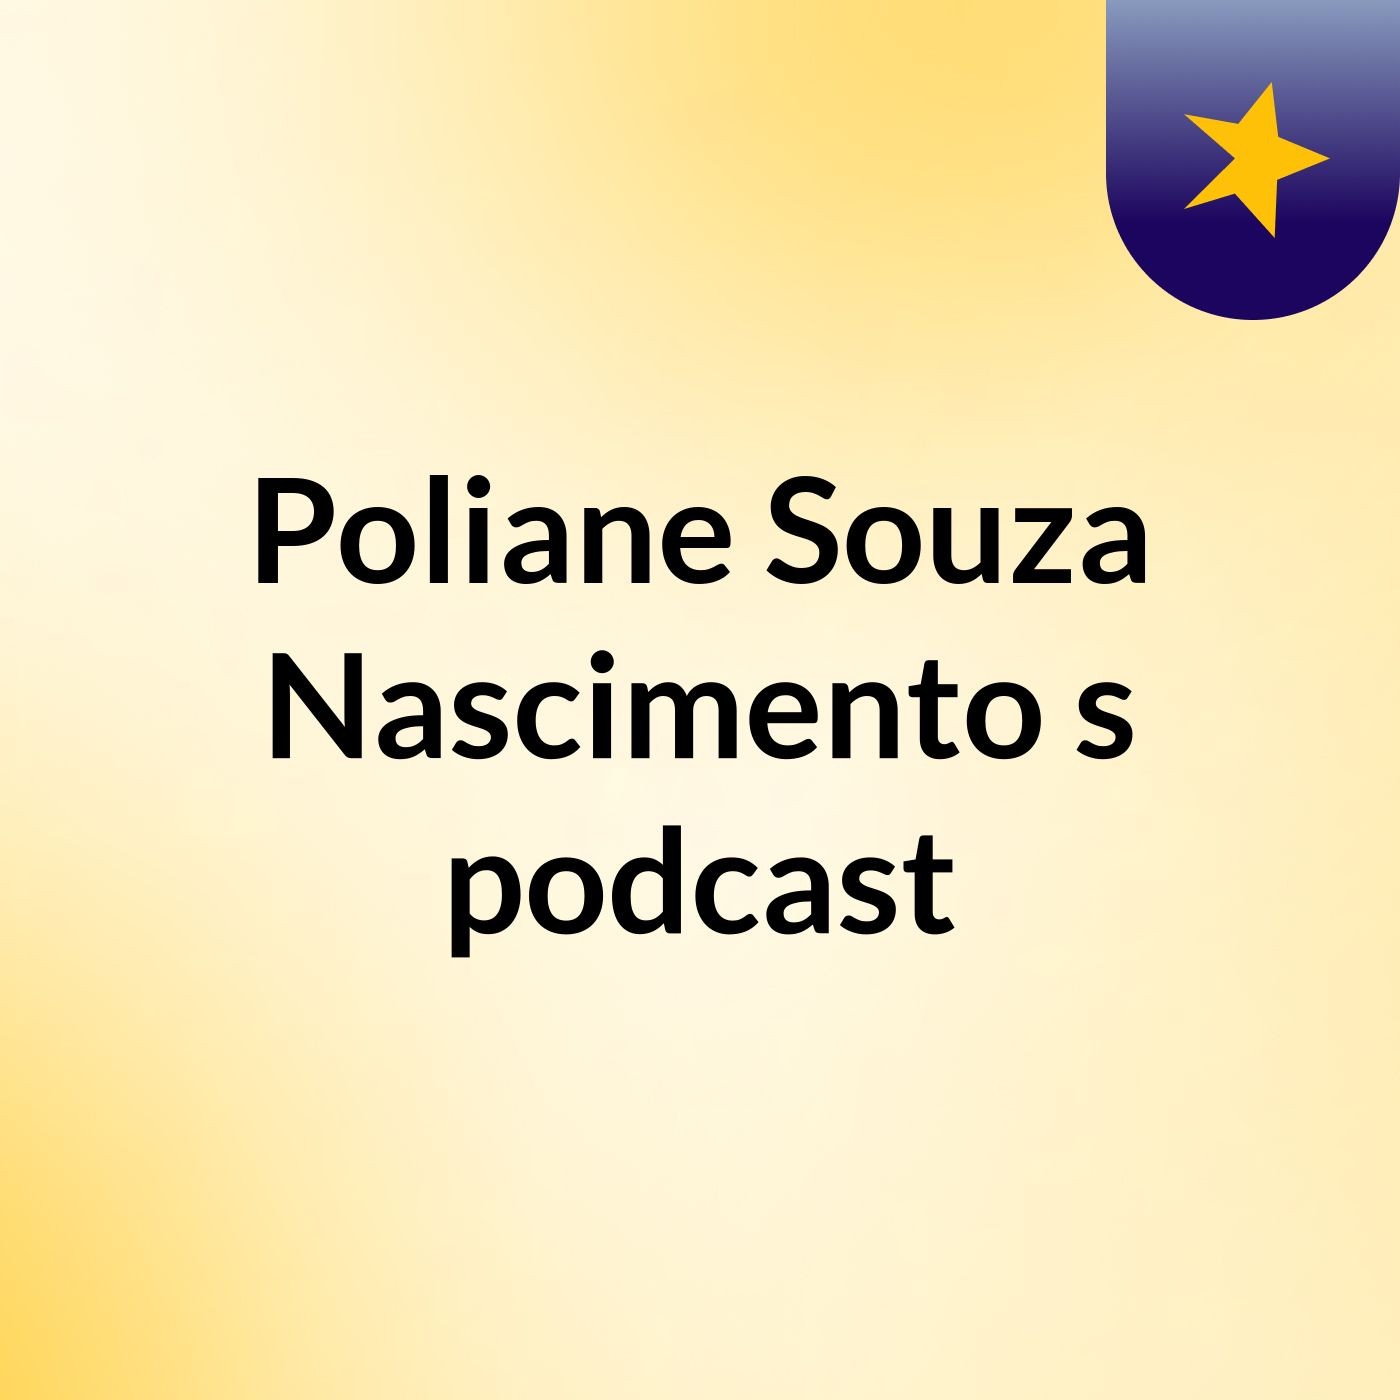 Poliane Souza Nascimento's podcast